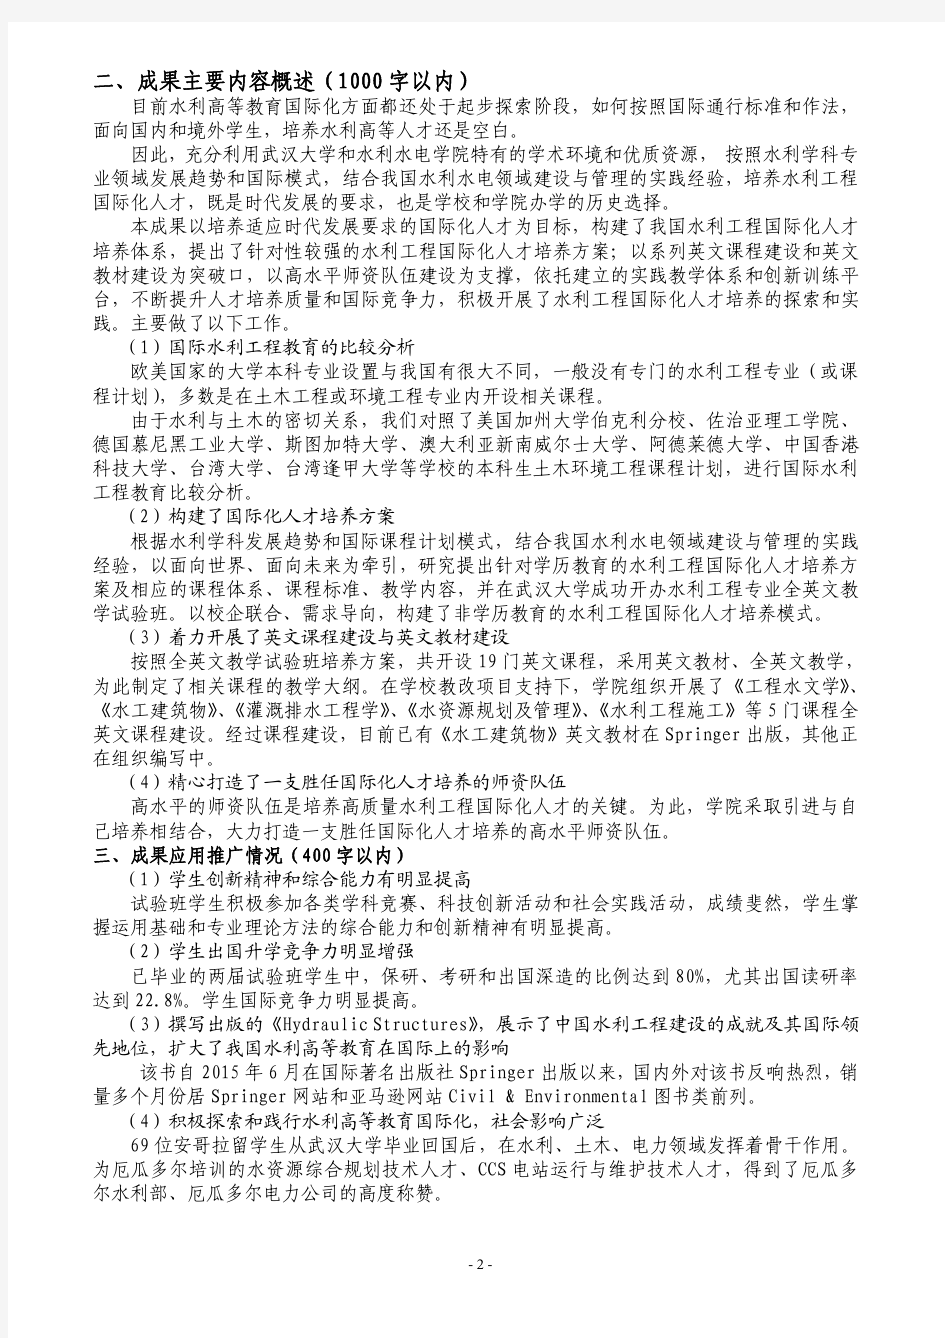 001-武汉大学-15-黄介生-水利工程国际化人才培养的探索与实践